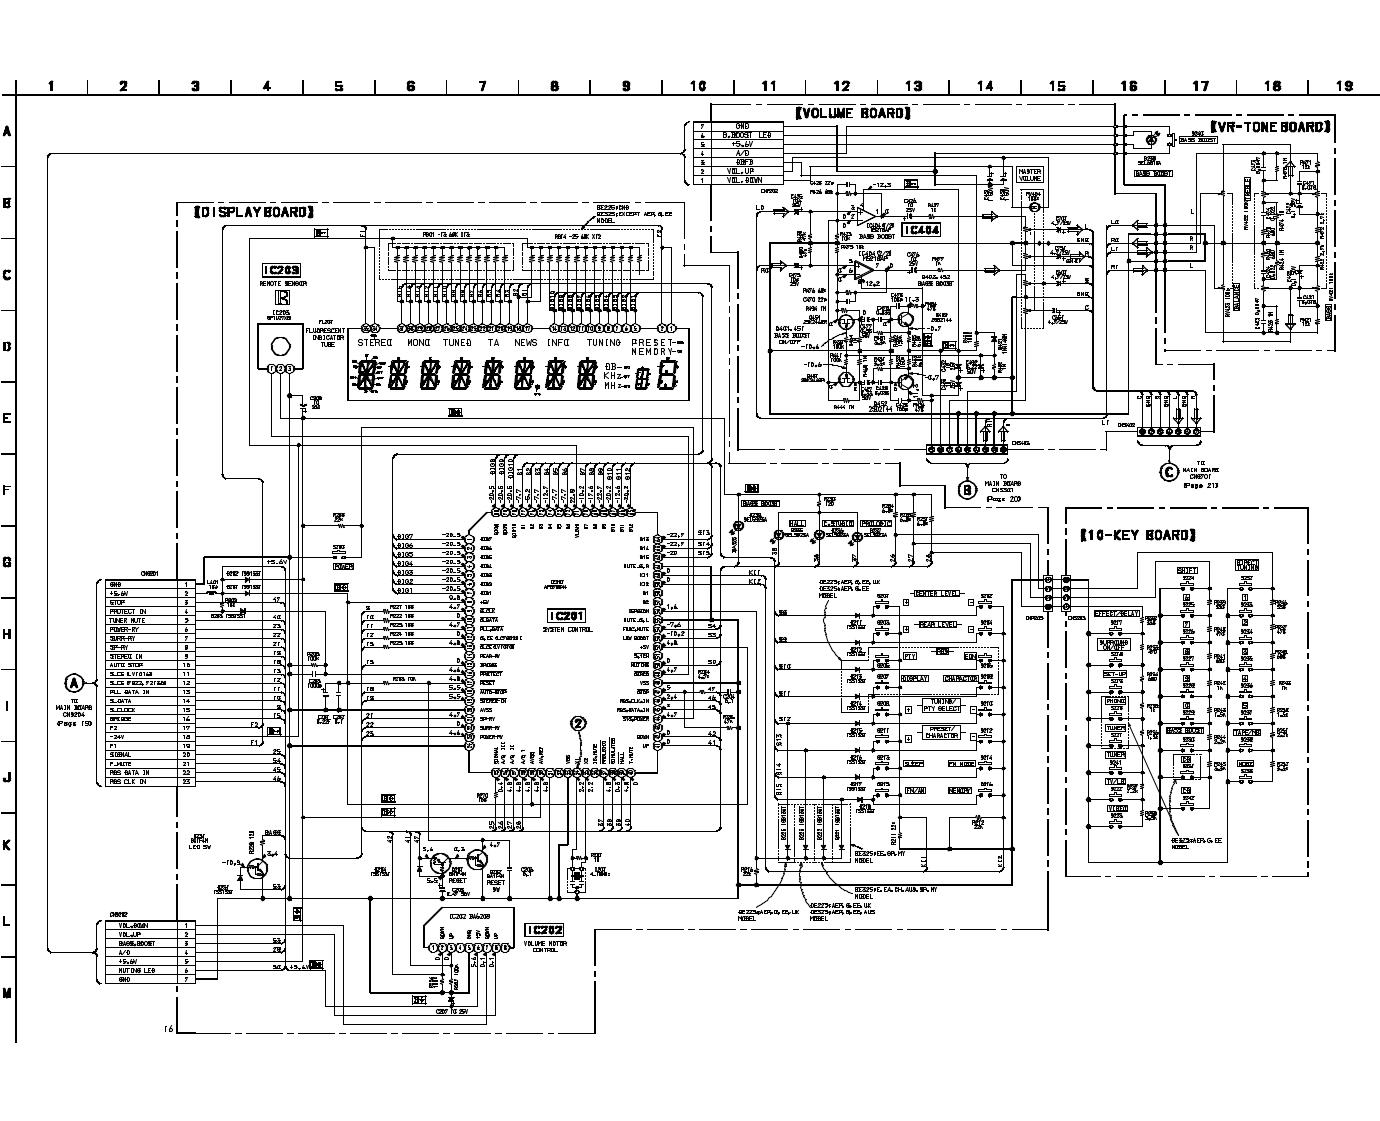 Sony STR-DE325, STR-DE225 Service Manual